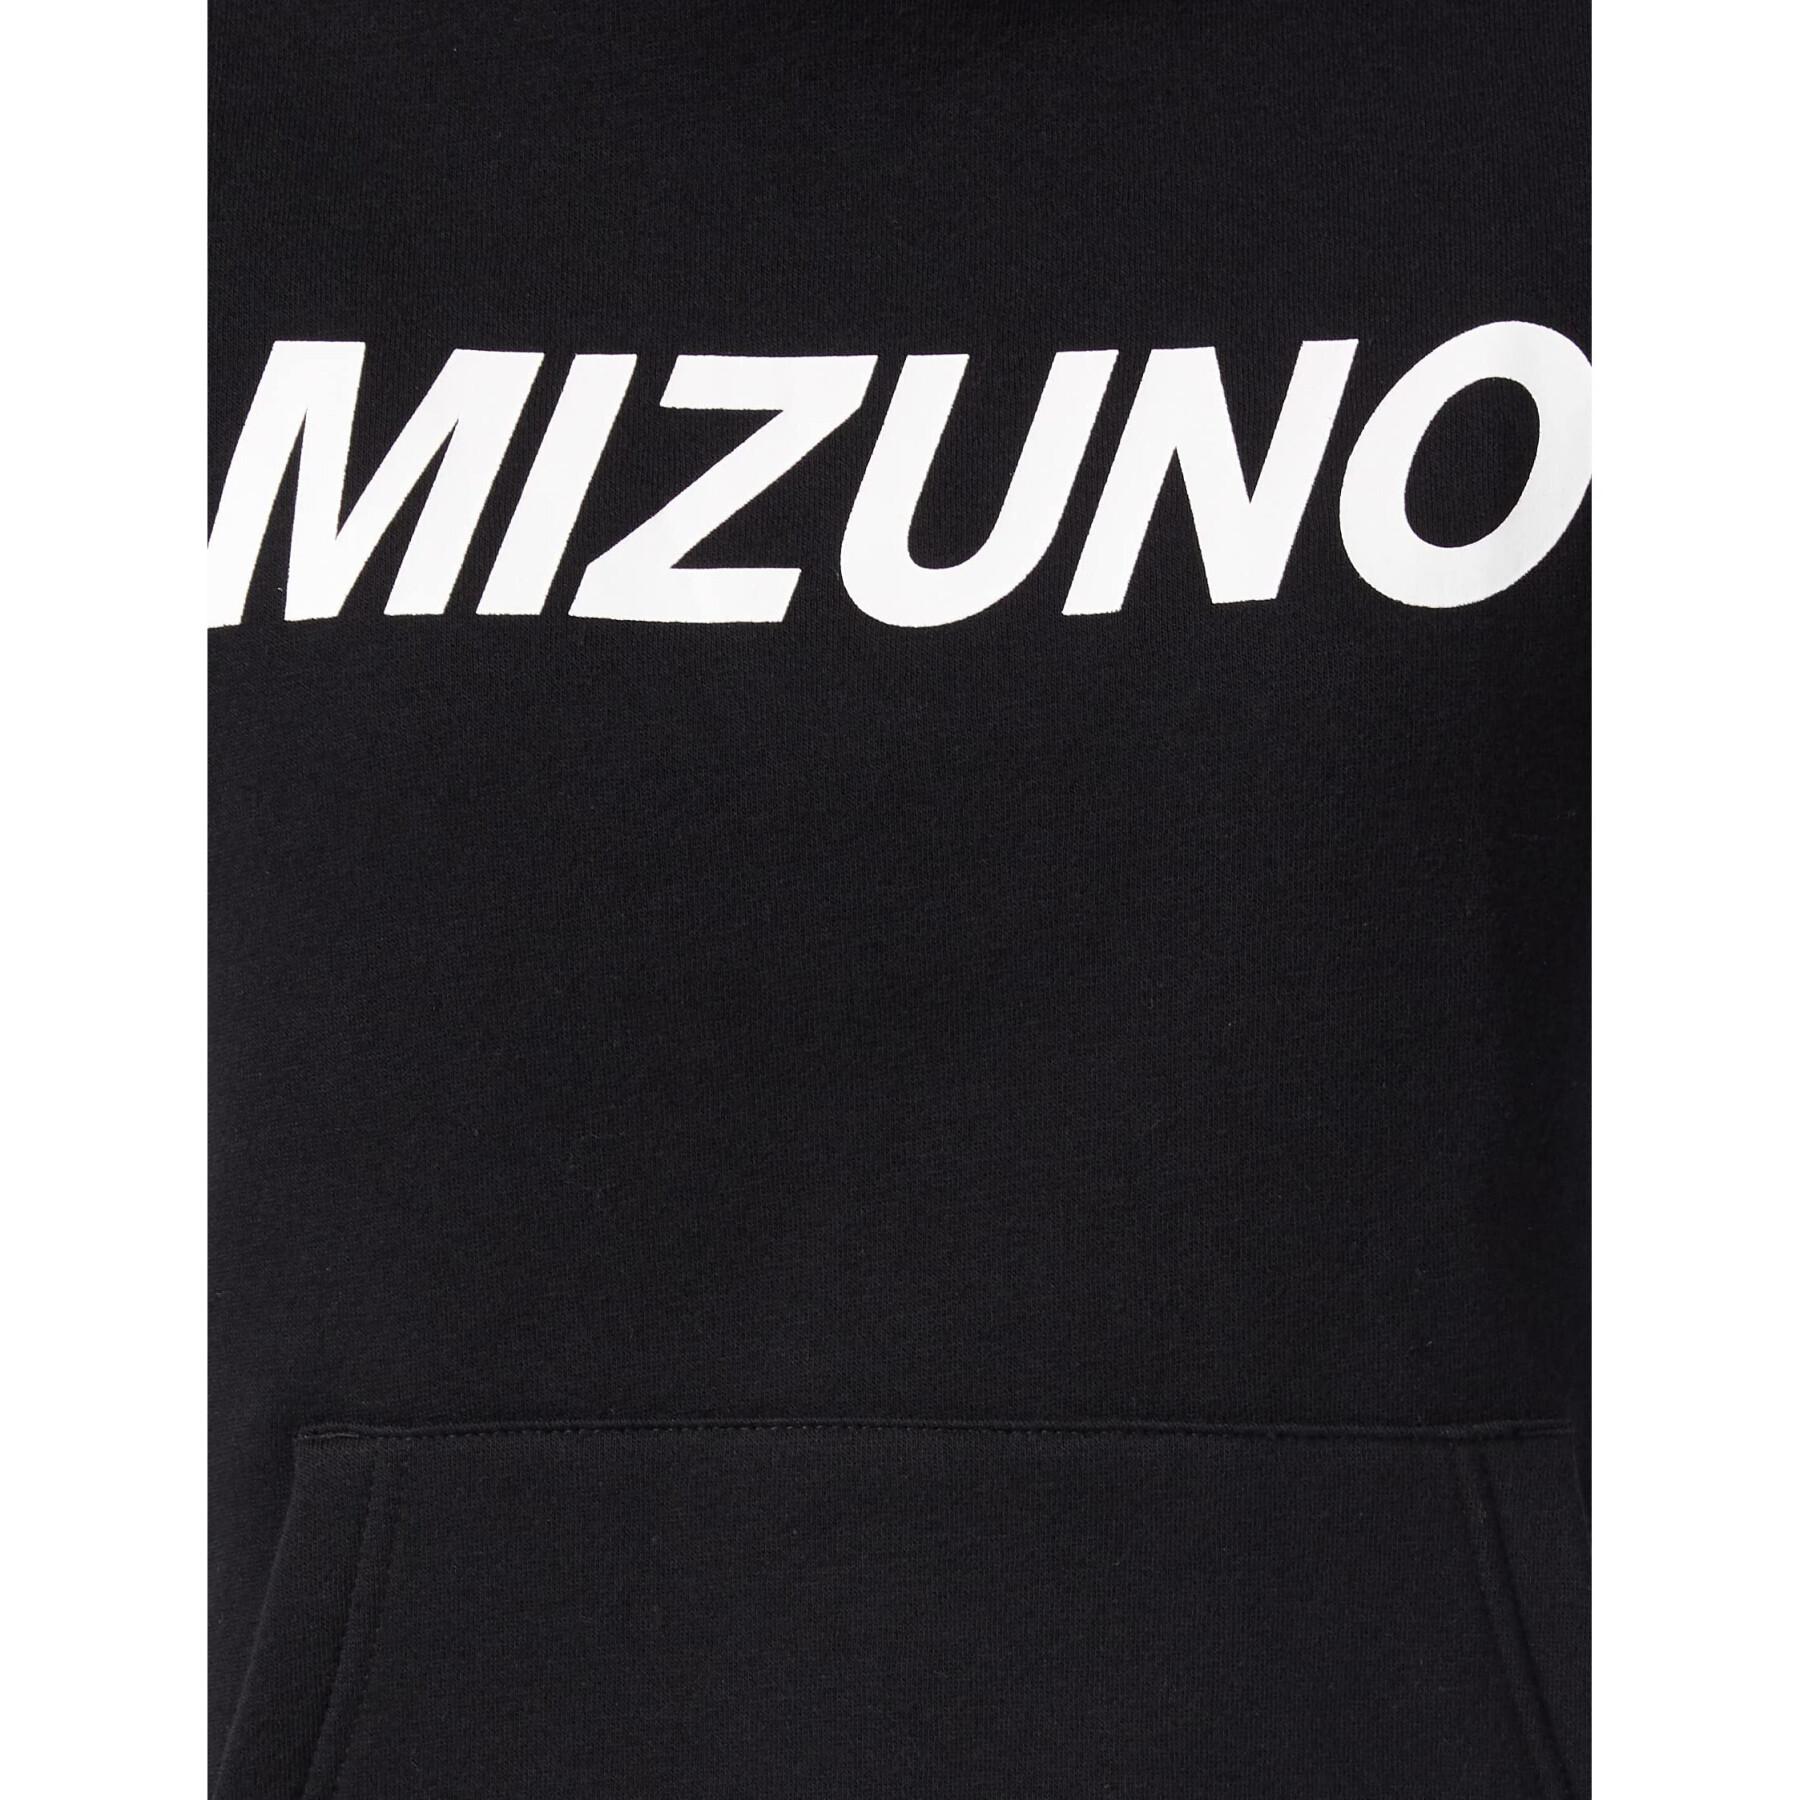 Bluza damska Mizuno Athletic Katakana